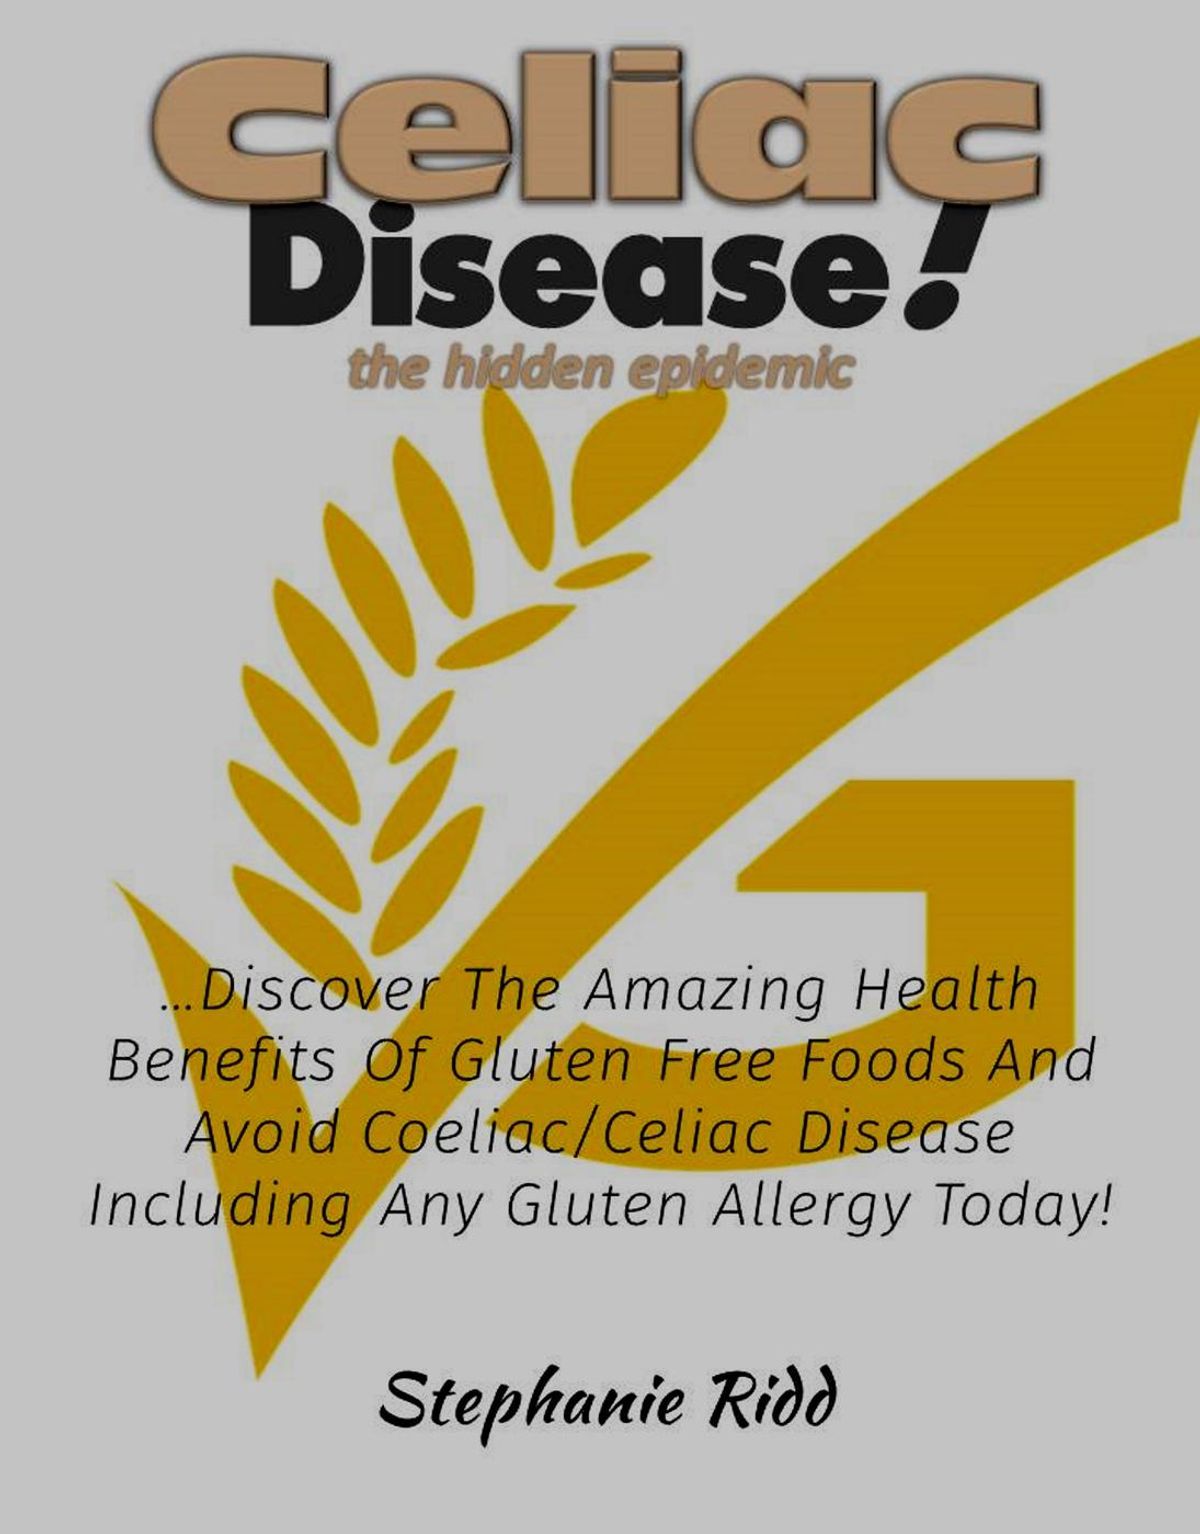 Benefits of gluten free diet for children